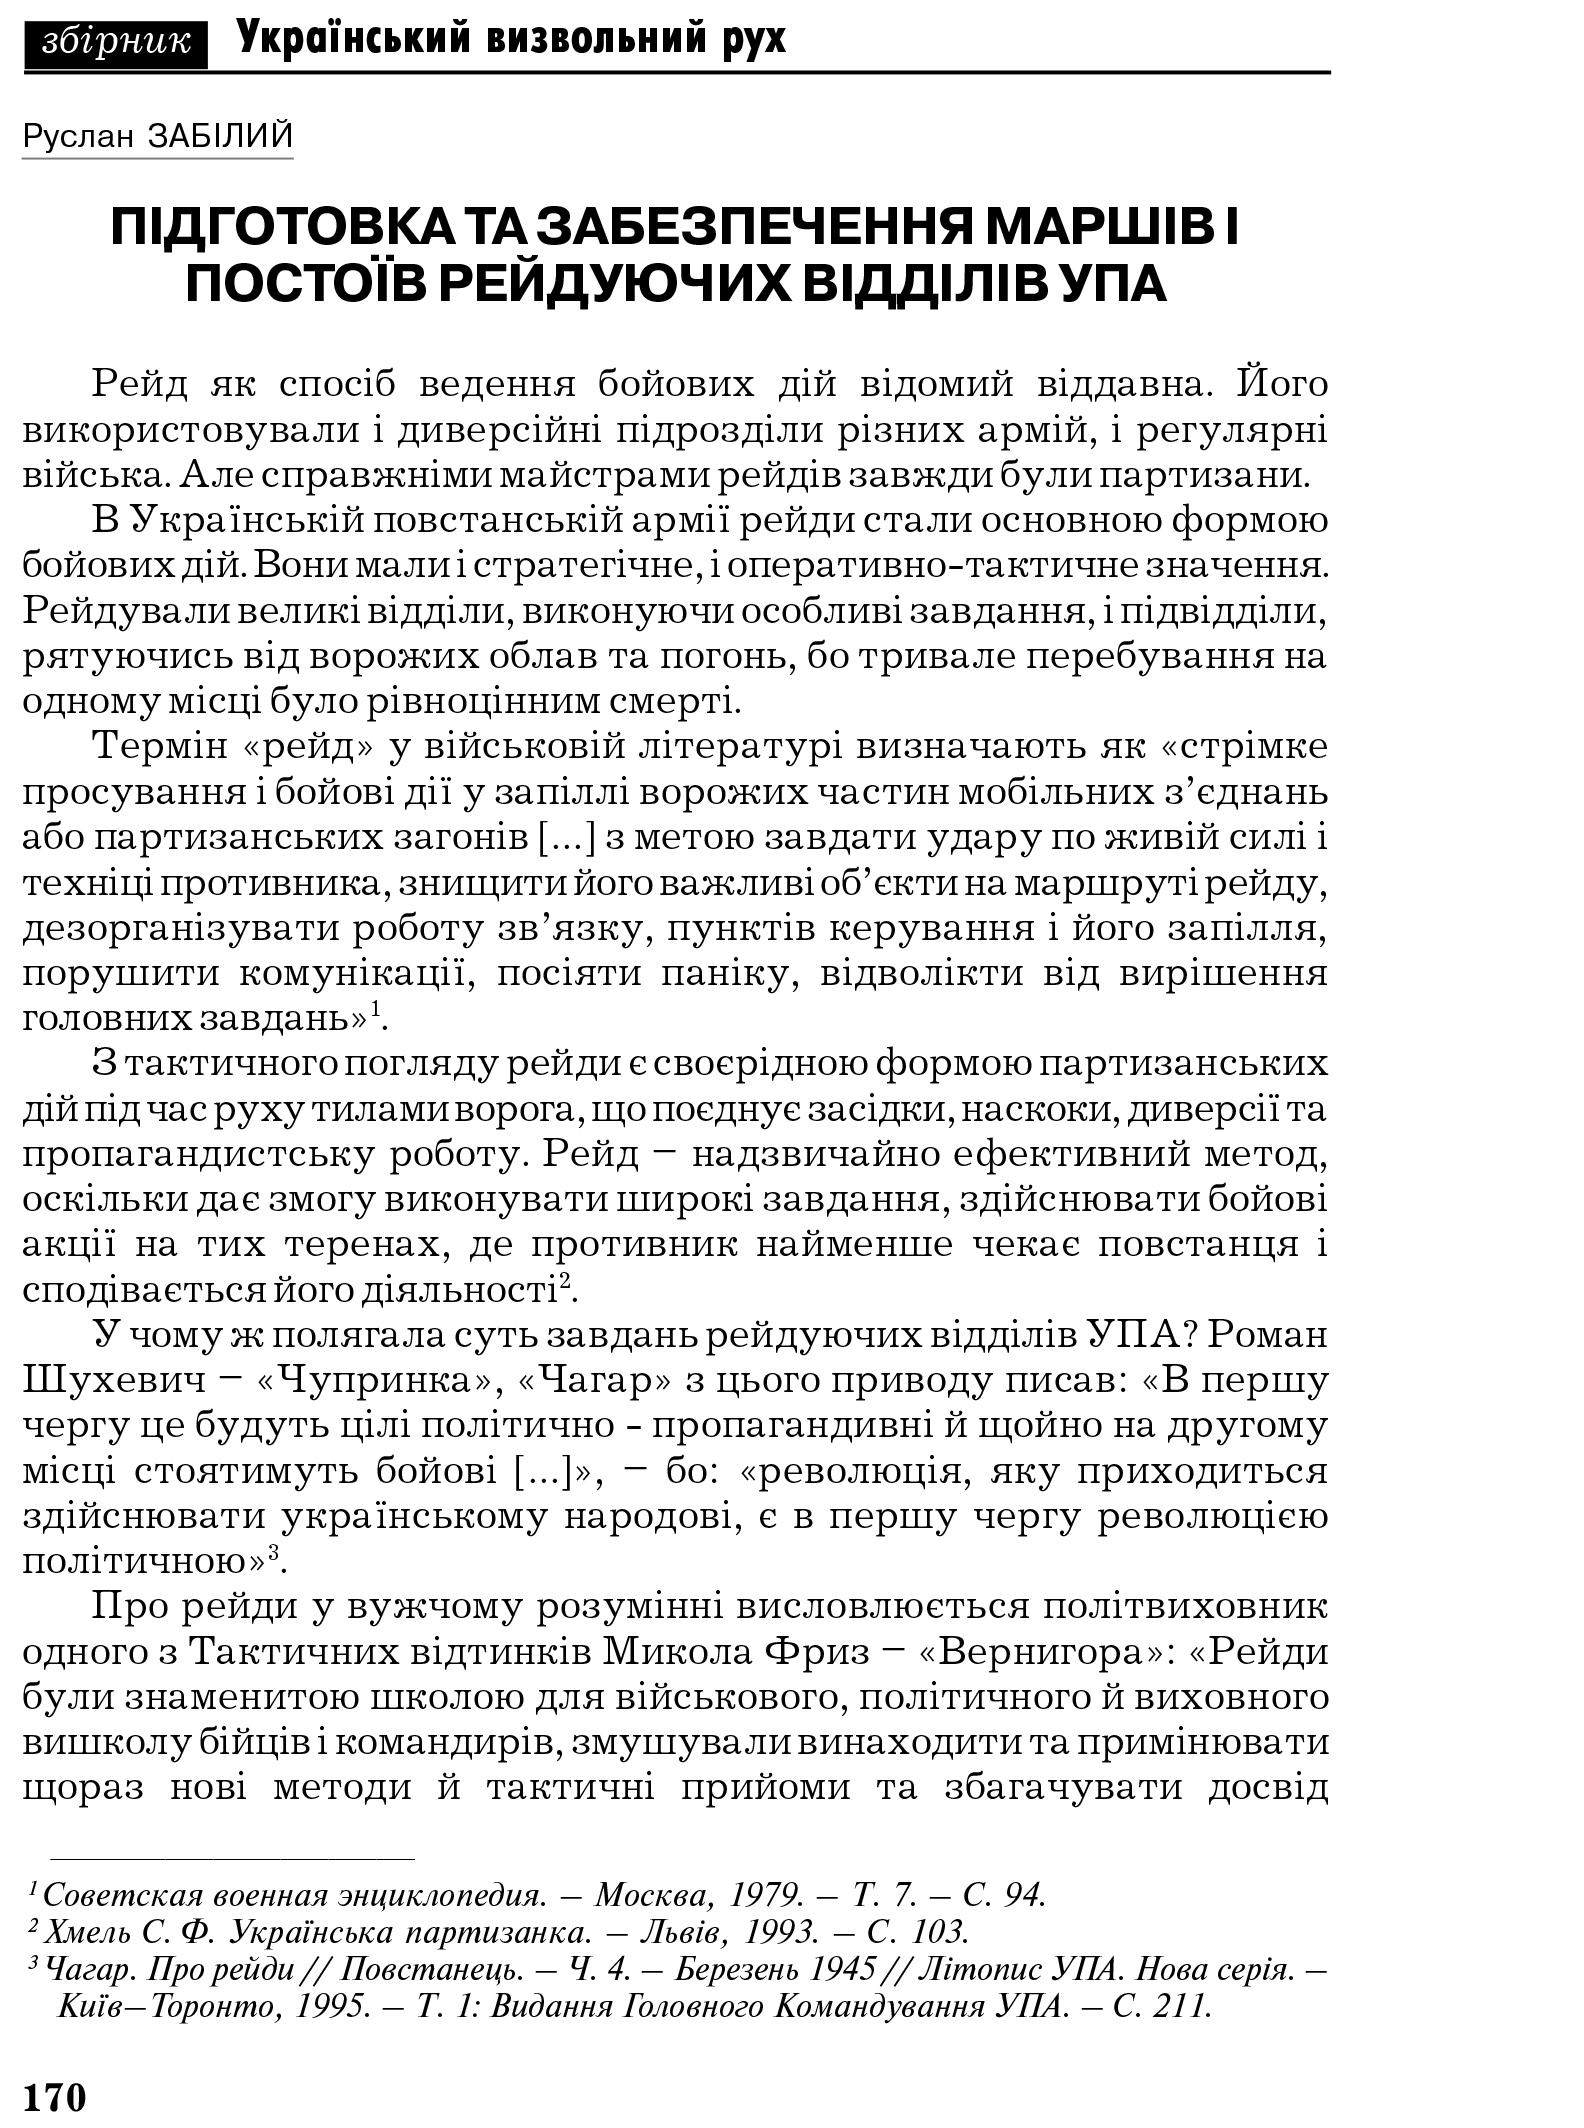 Український визвольний рух №6, ст. 170 - 183